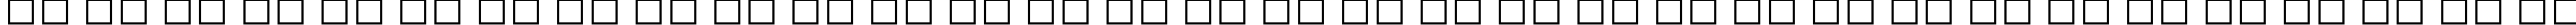 Пример написания русского алфавита шрифтом Banjoman Open Bold